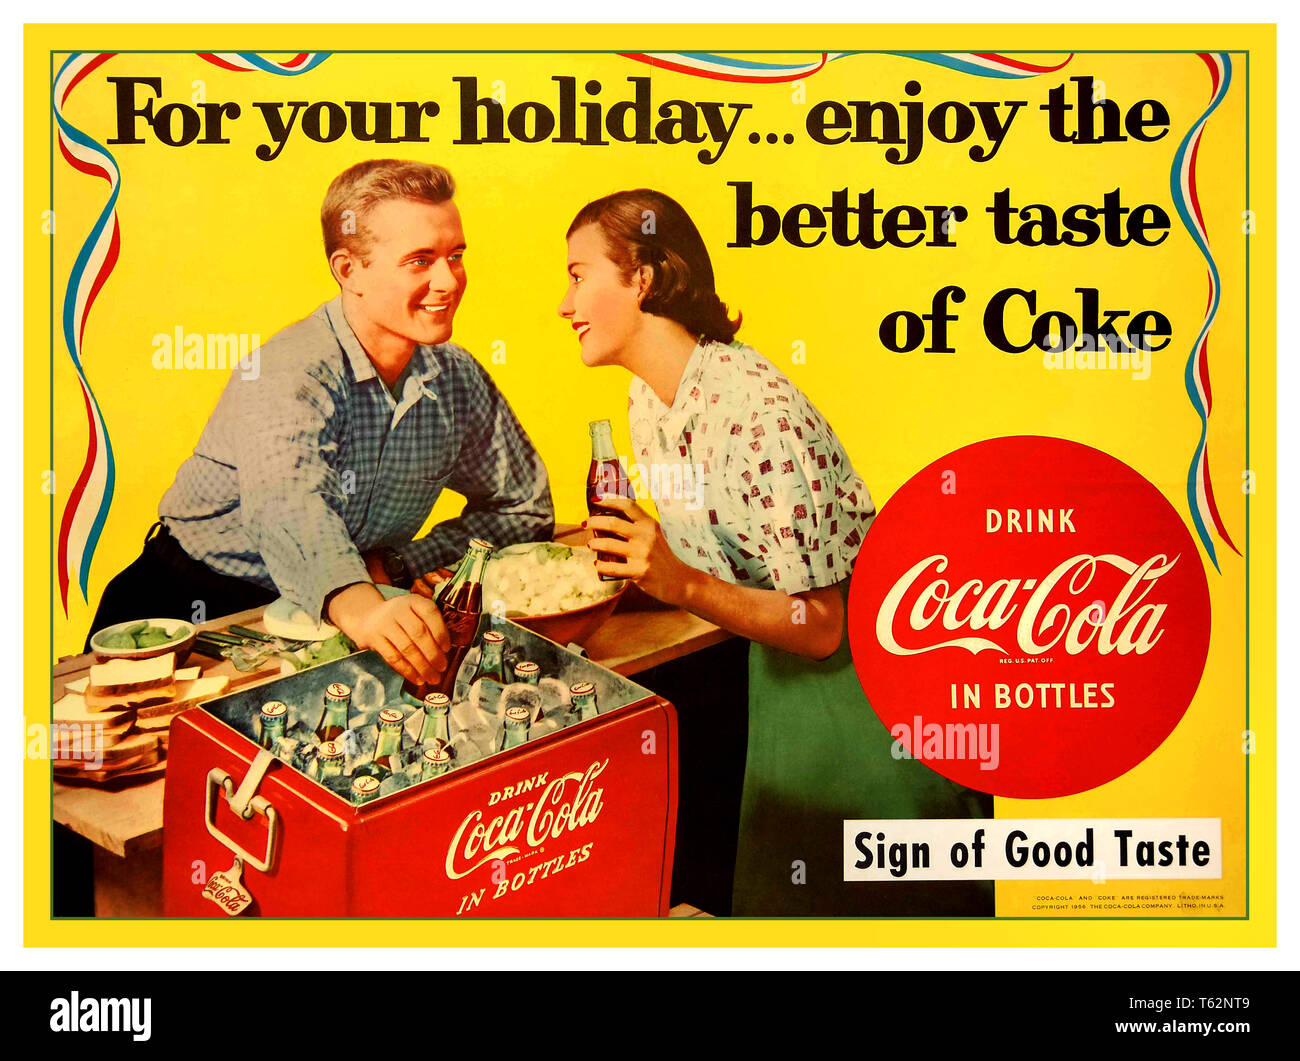 Vintage anni cinquanta la Coca Cola poster pubblicitario ' per la vostra vacanza ... godetevi il meglio il gusto del coke" Foto Stock